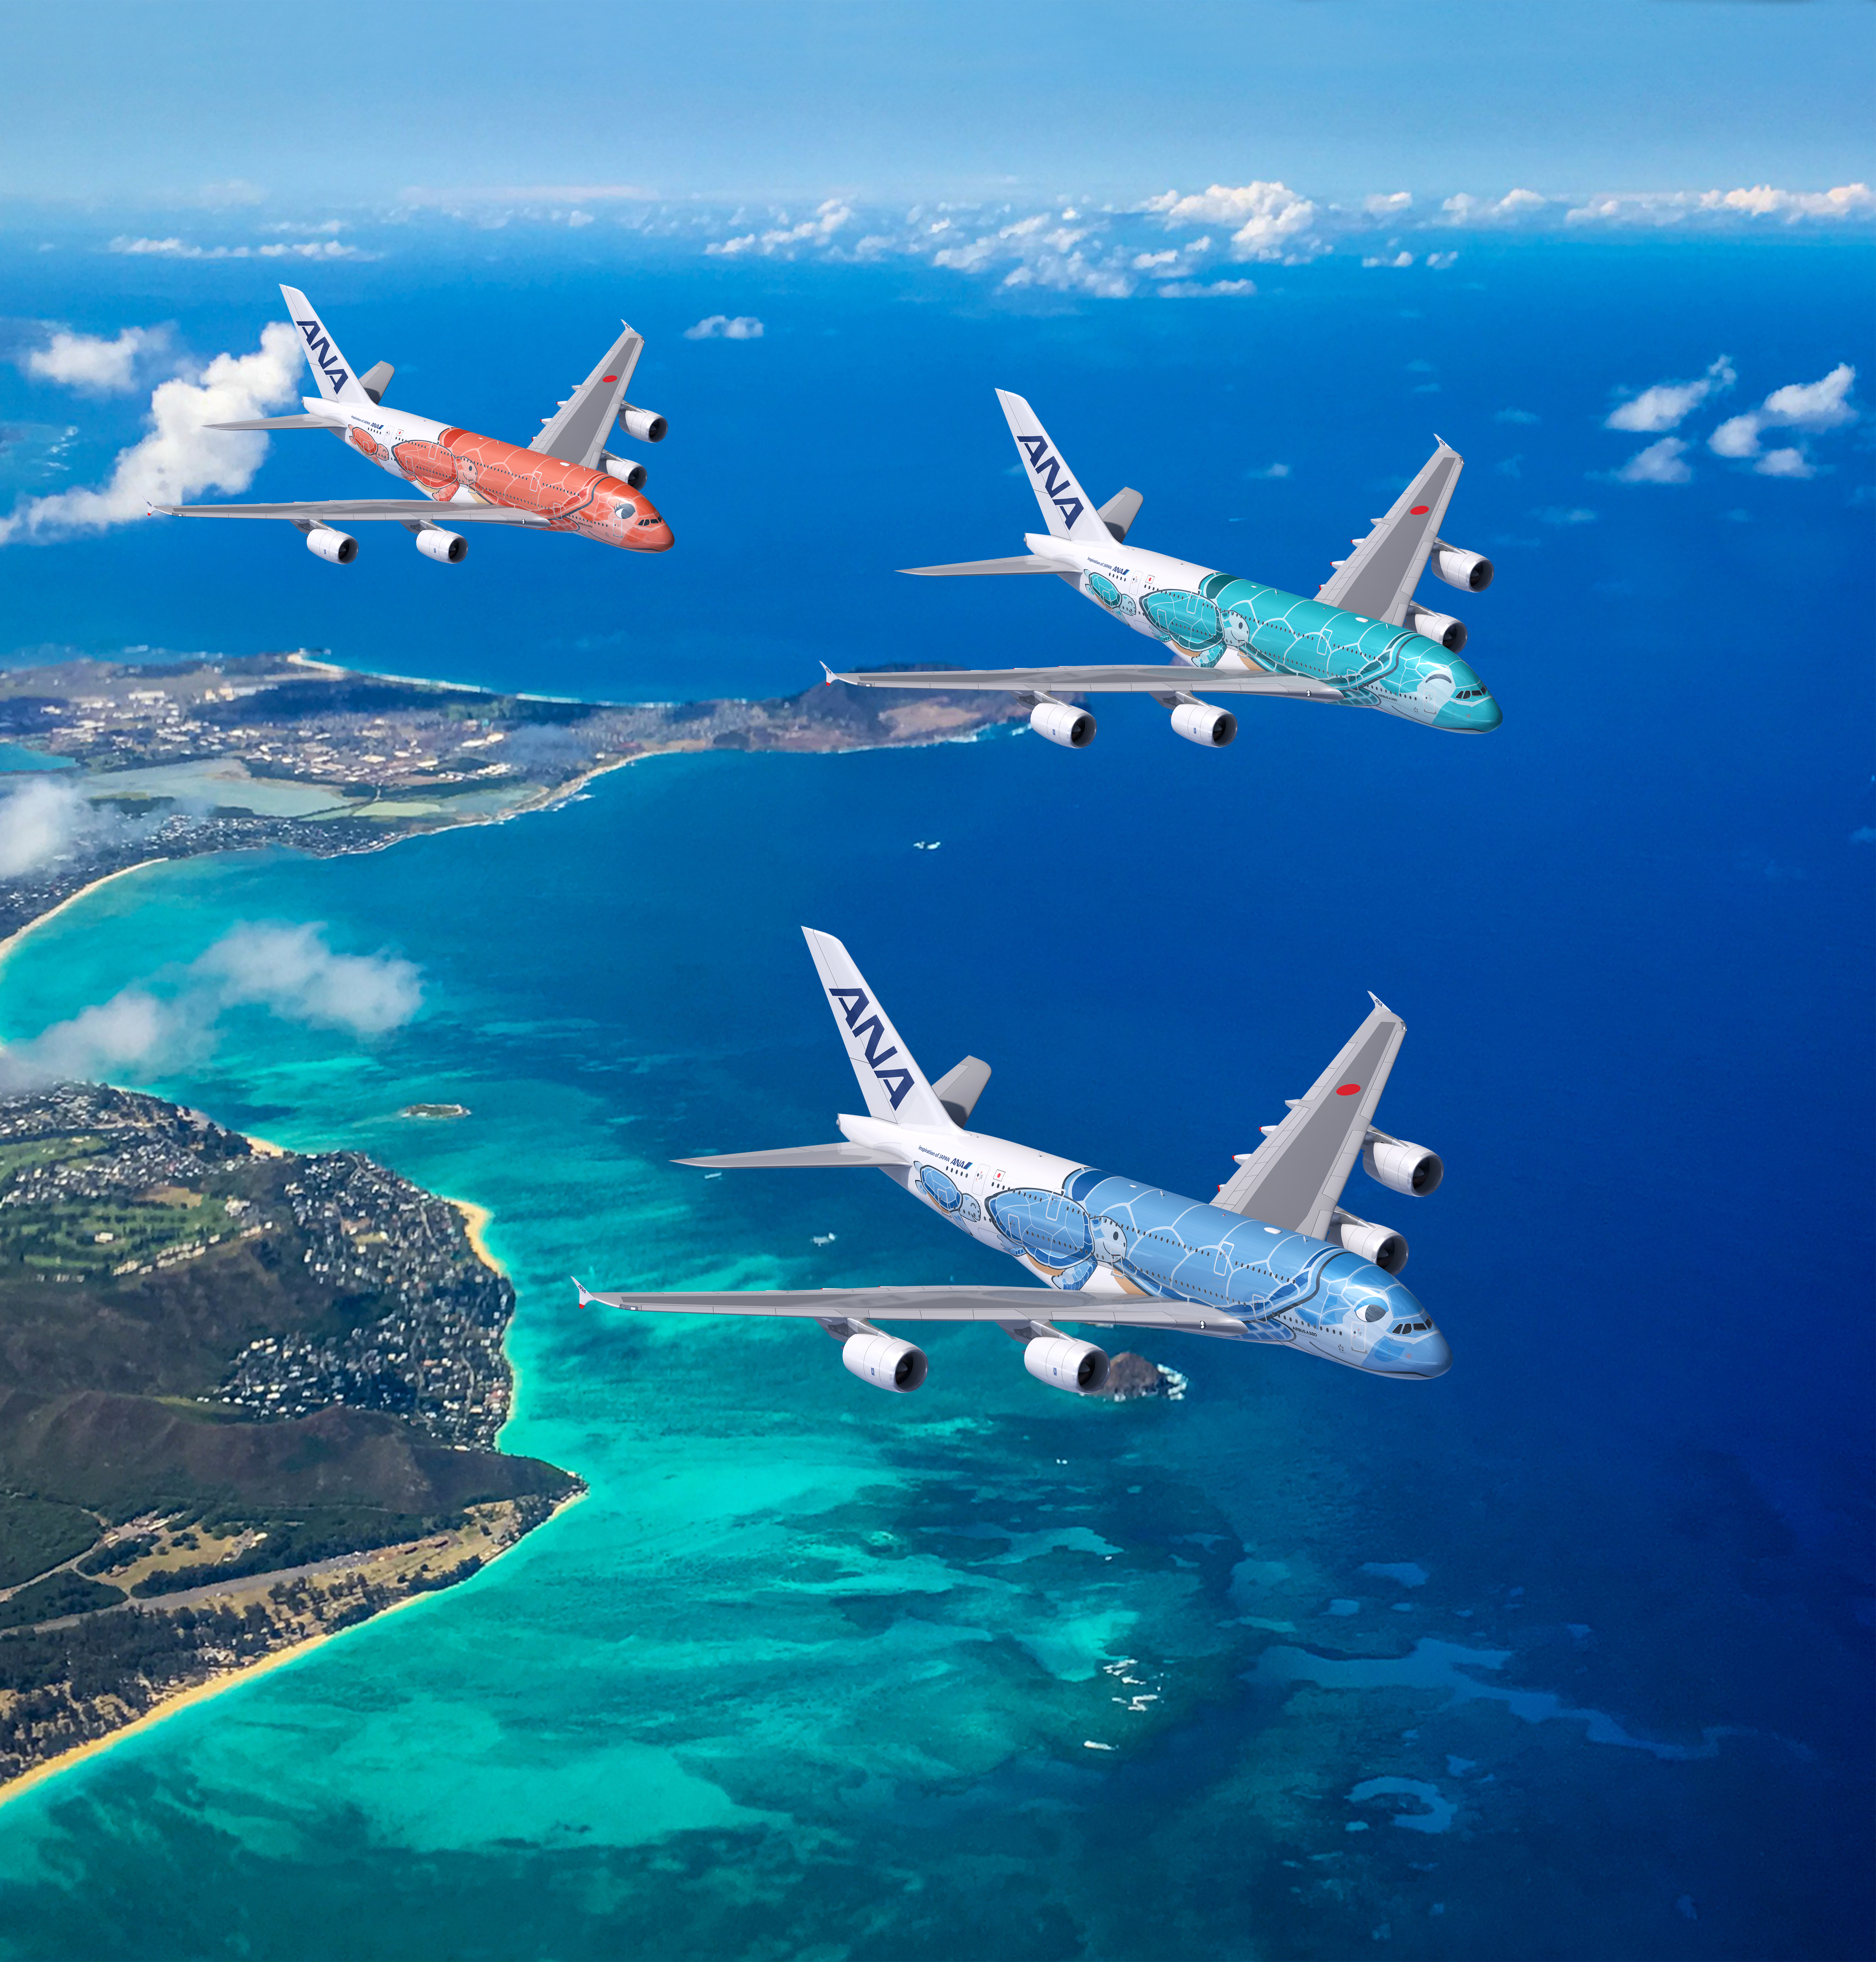 夏威夷携手全日空战略合作 A380海龟彩绘机提升中国游客旅途体验